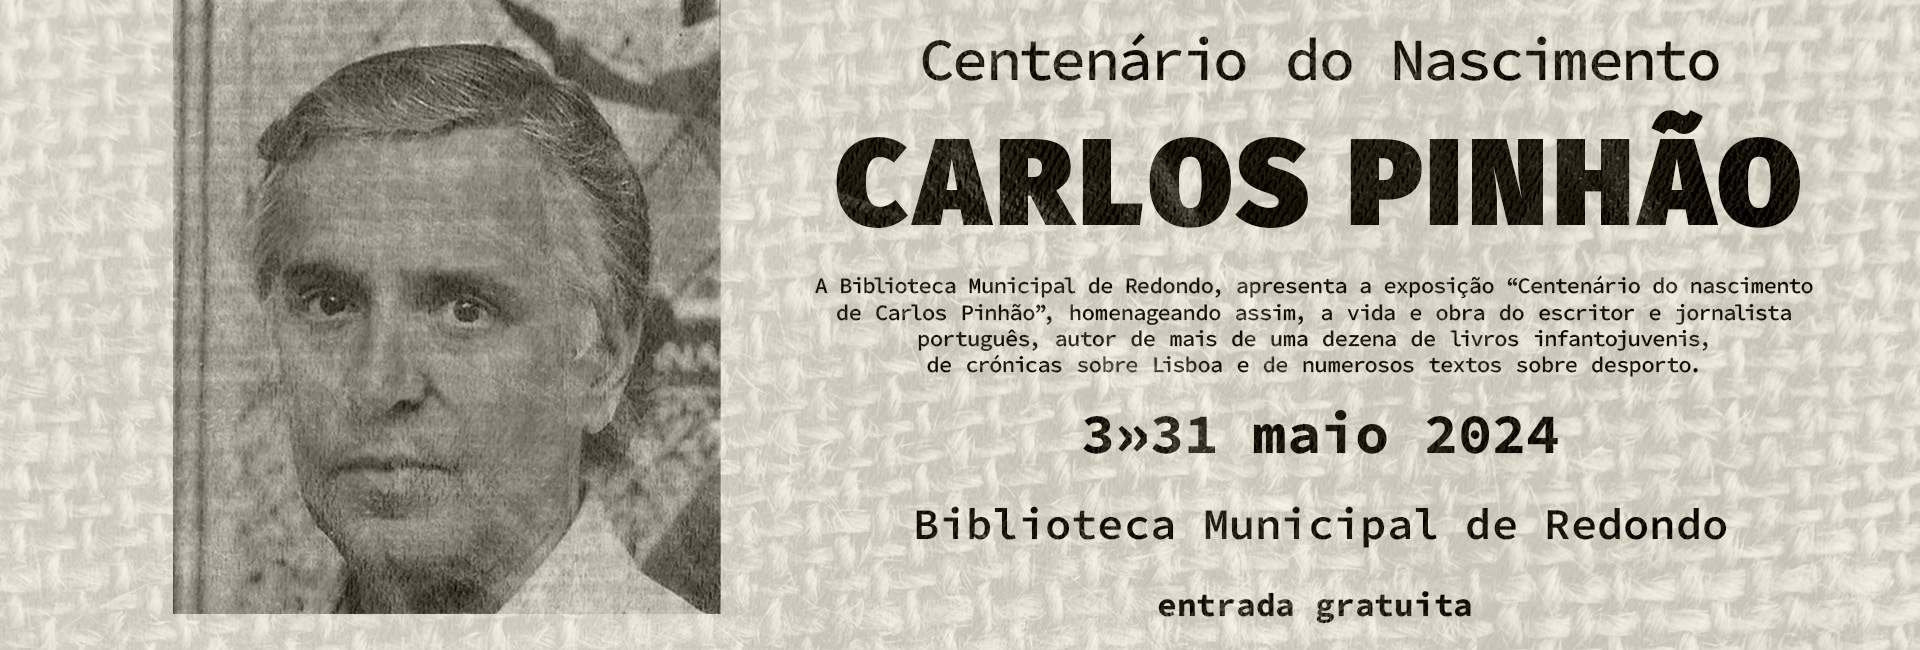 Exposição “Centenário do Nascimento de Carlos Pinhão” | de 3 a 31 de maio | Biblioteca Municipal de Redondo